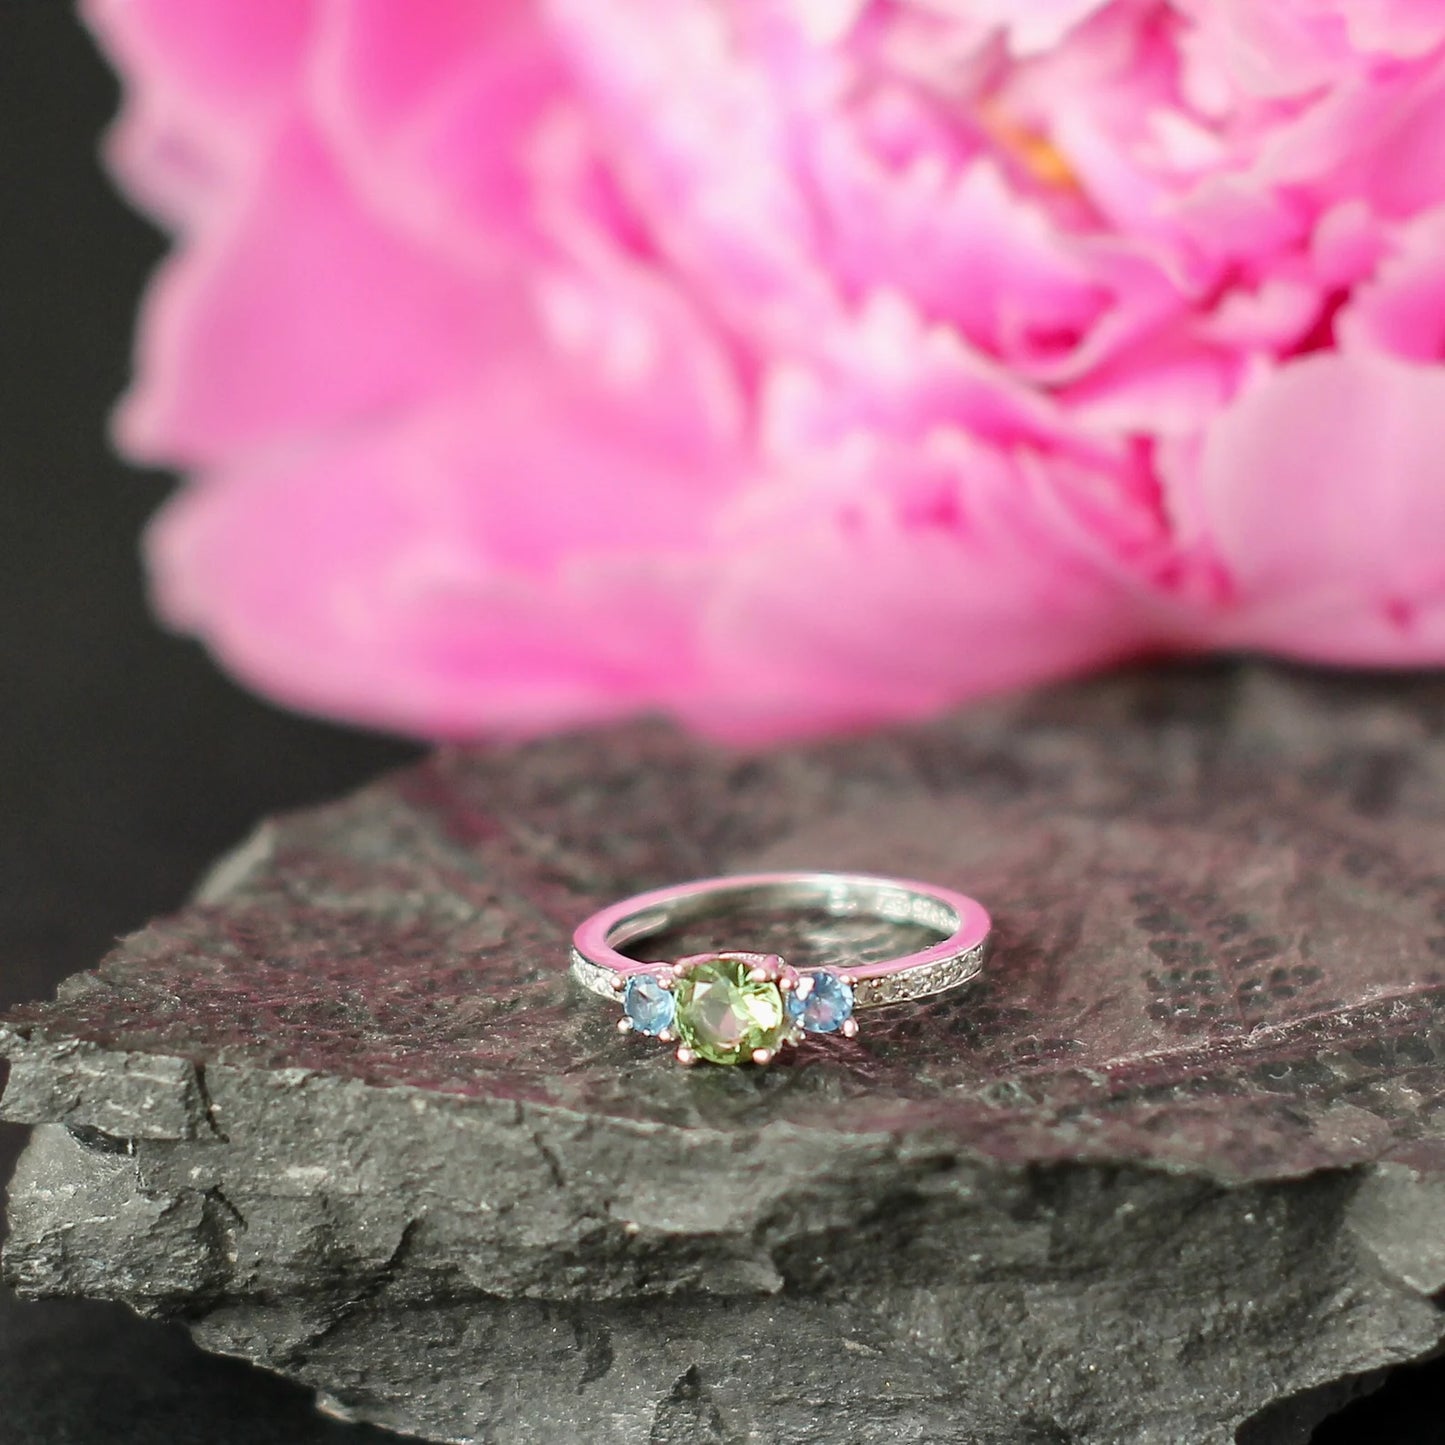 CZECH MOLDAVITE+ 2 blue Sapphire ring, Sterling silver Moldavite ring and Natural Sapphire gemstone, genuine moldavite ring with certificate